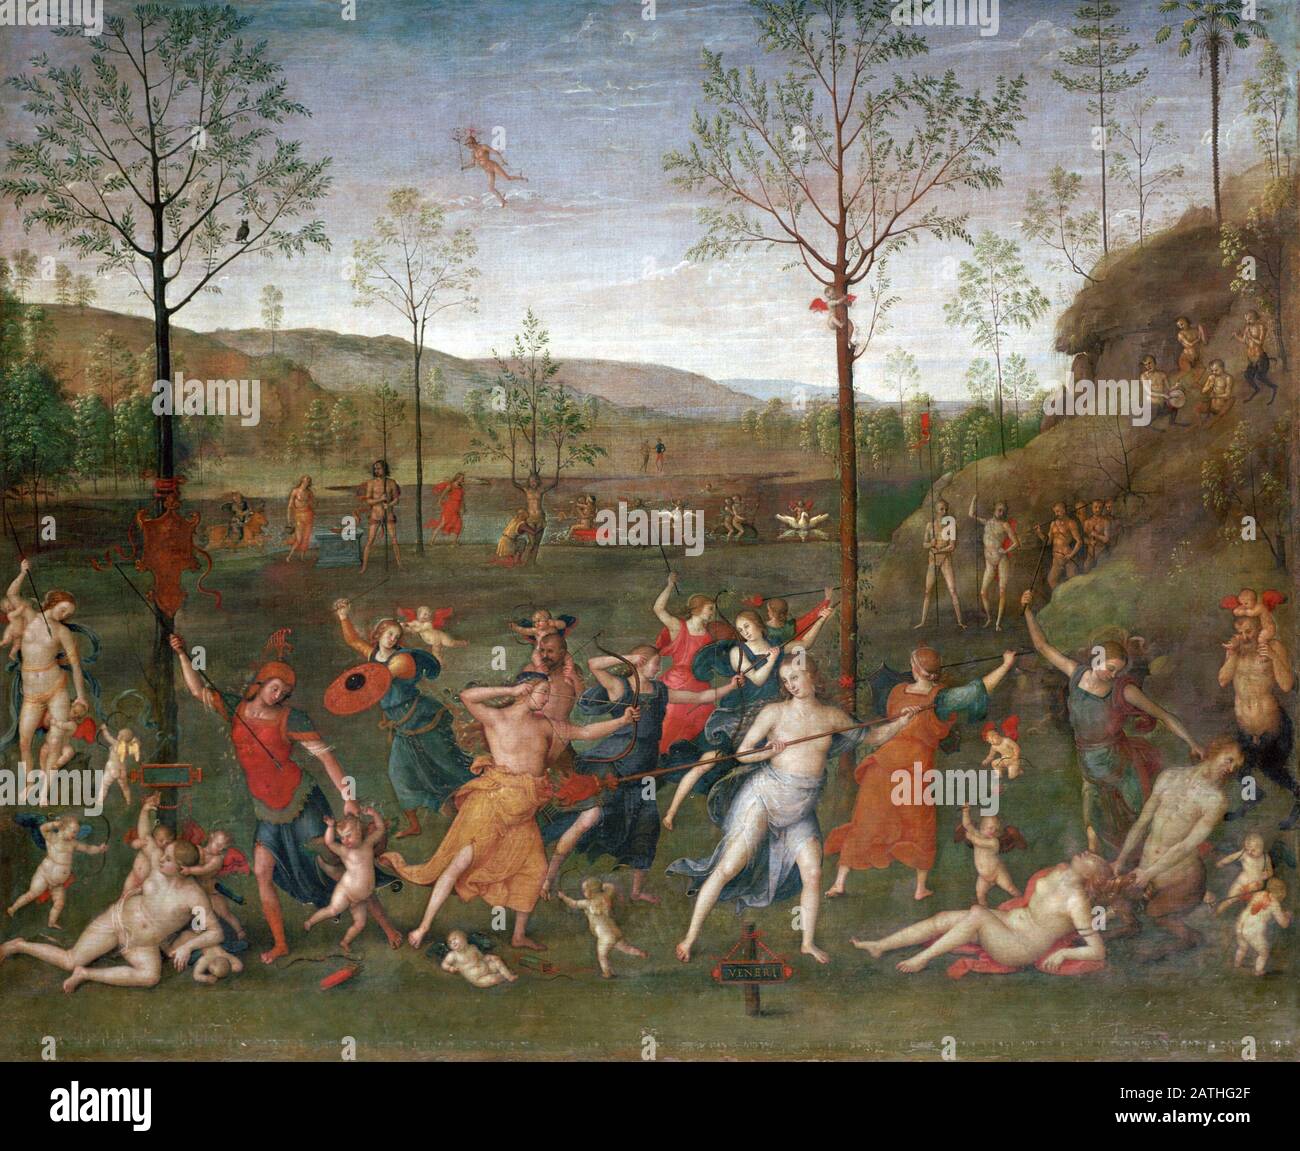 Pietro Perugino Ecole italienne la bataille de l'Amour et de la chasteté Après 1503 huile sur toile (160 x 191 cm) Paris, musée du Louvre Banque D'Images